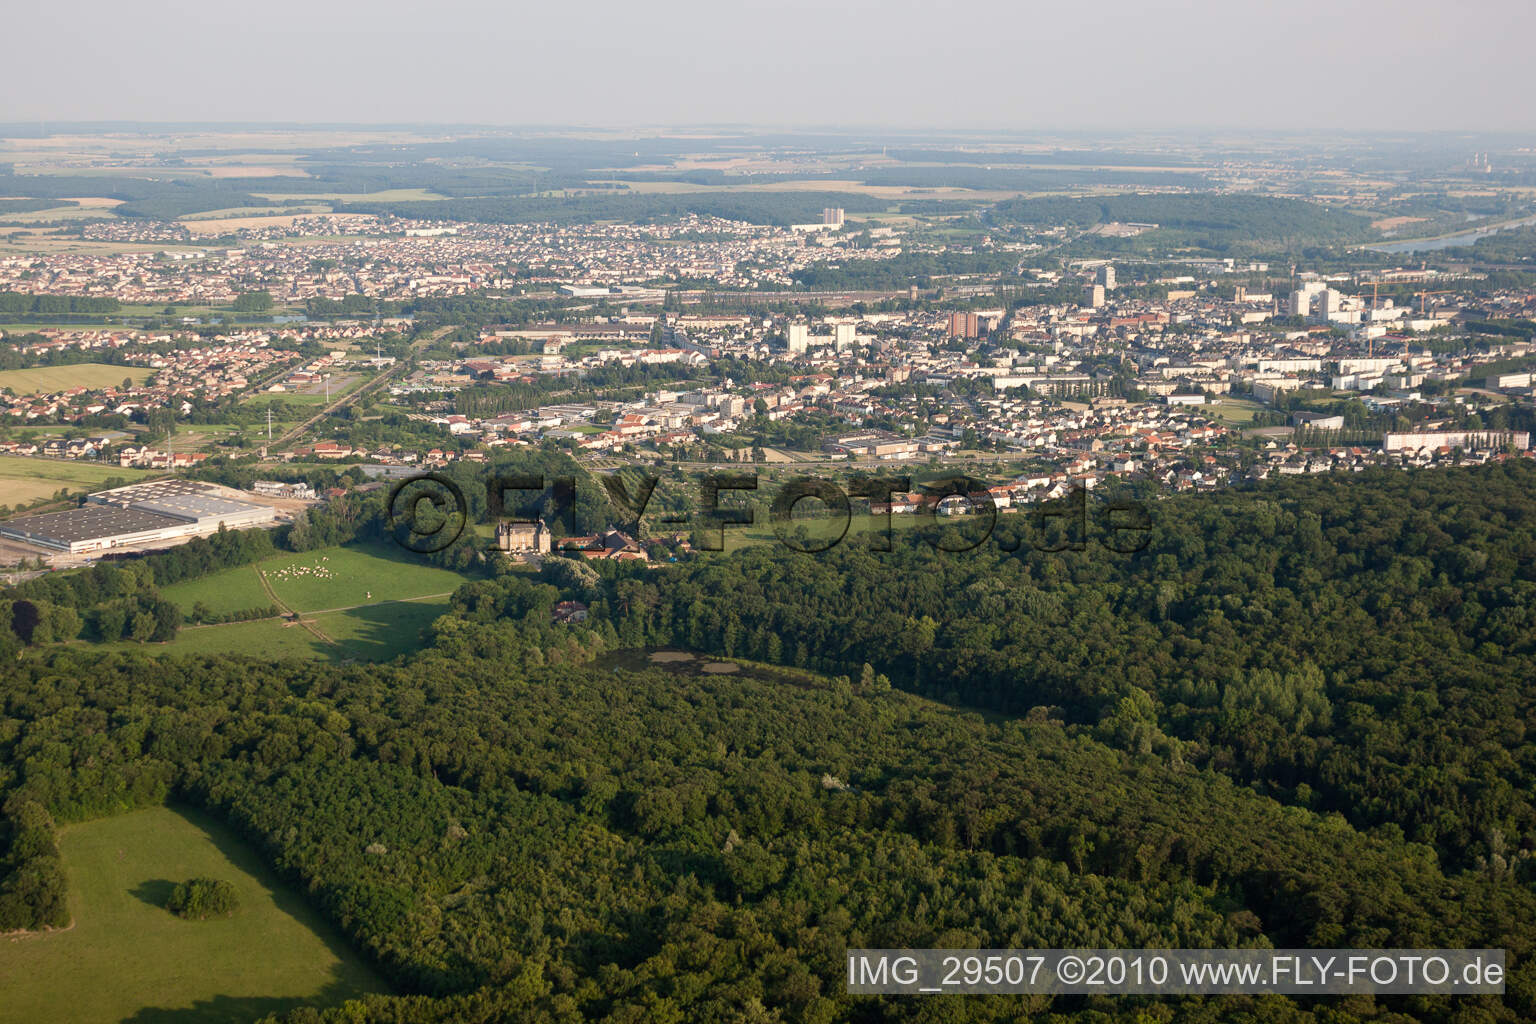 Vue aérienne de Thionville dans le département Moselle, France